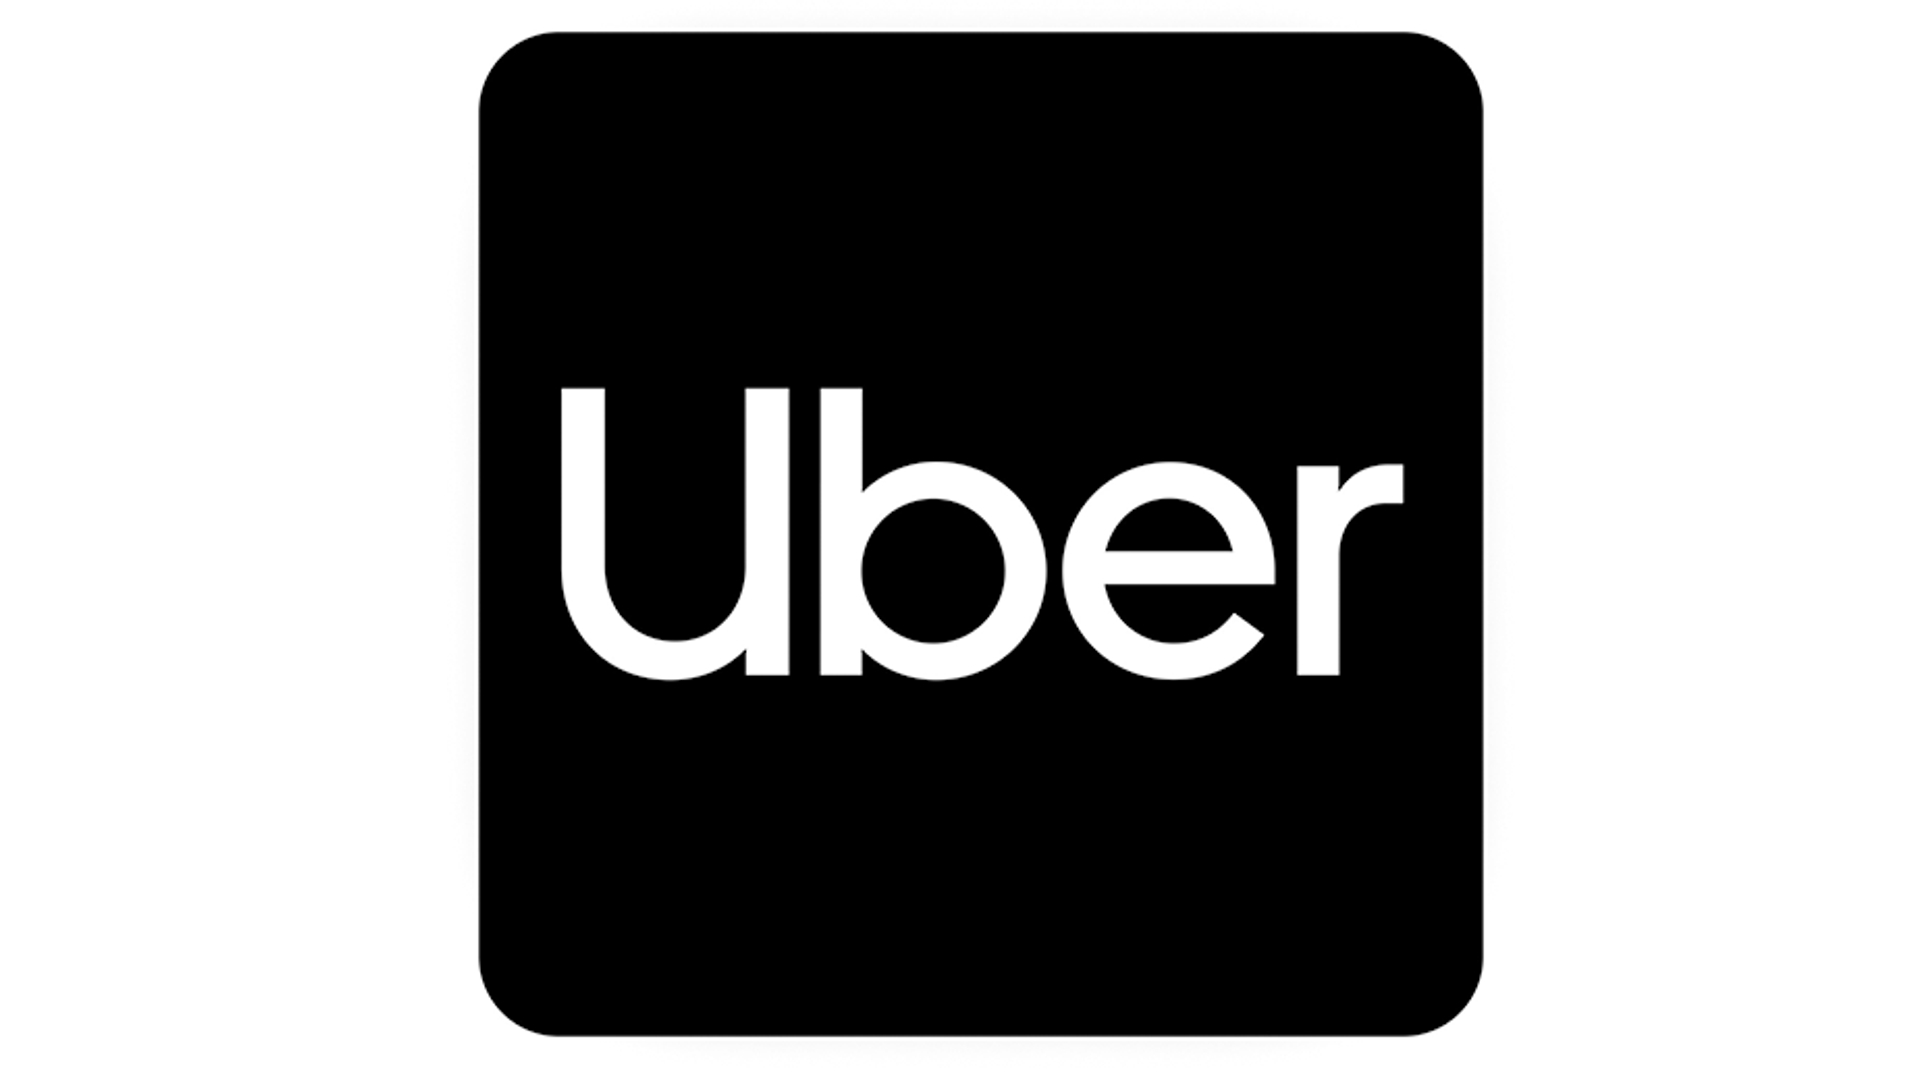 uber 930 logo